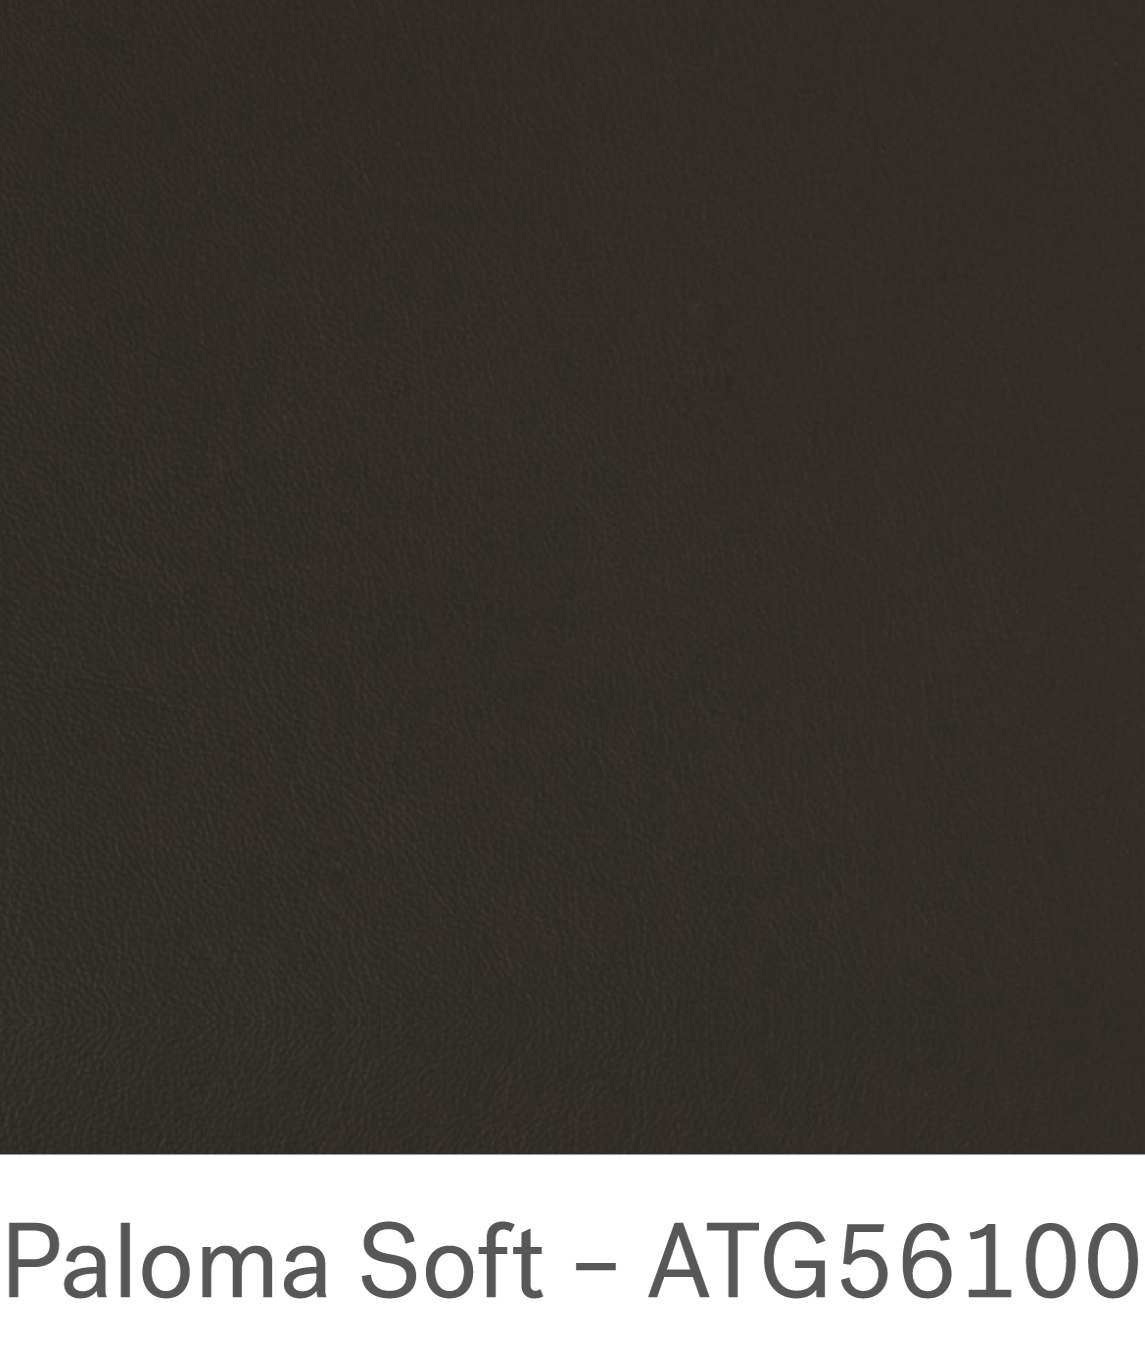 Paloma soft – ATG56100